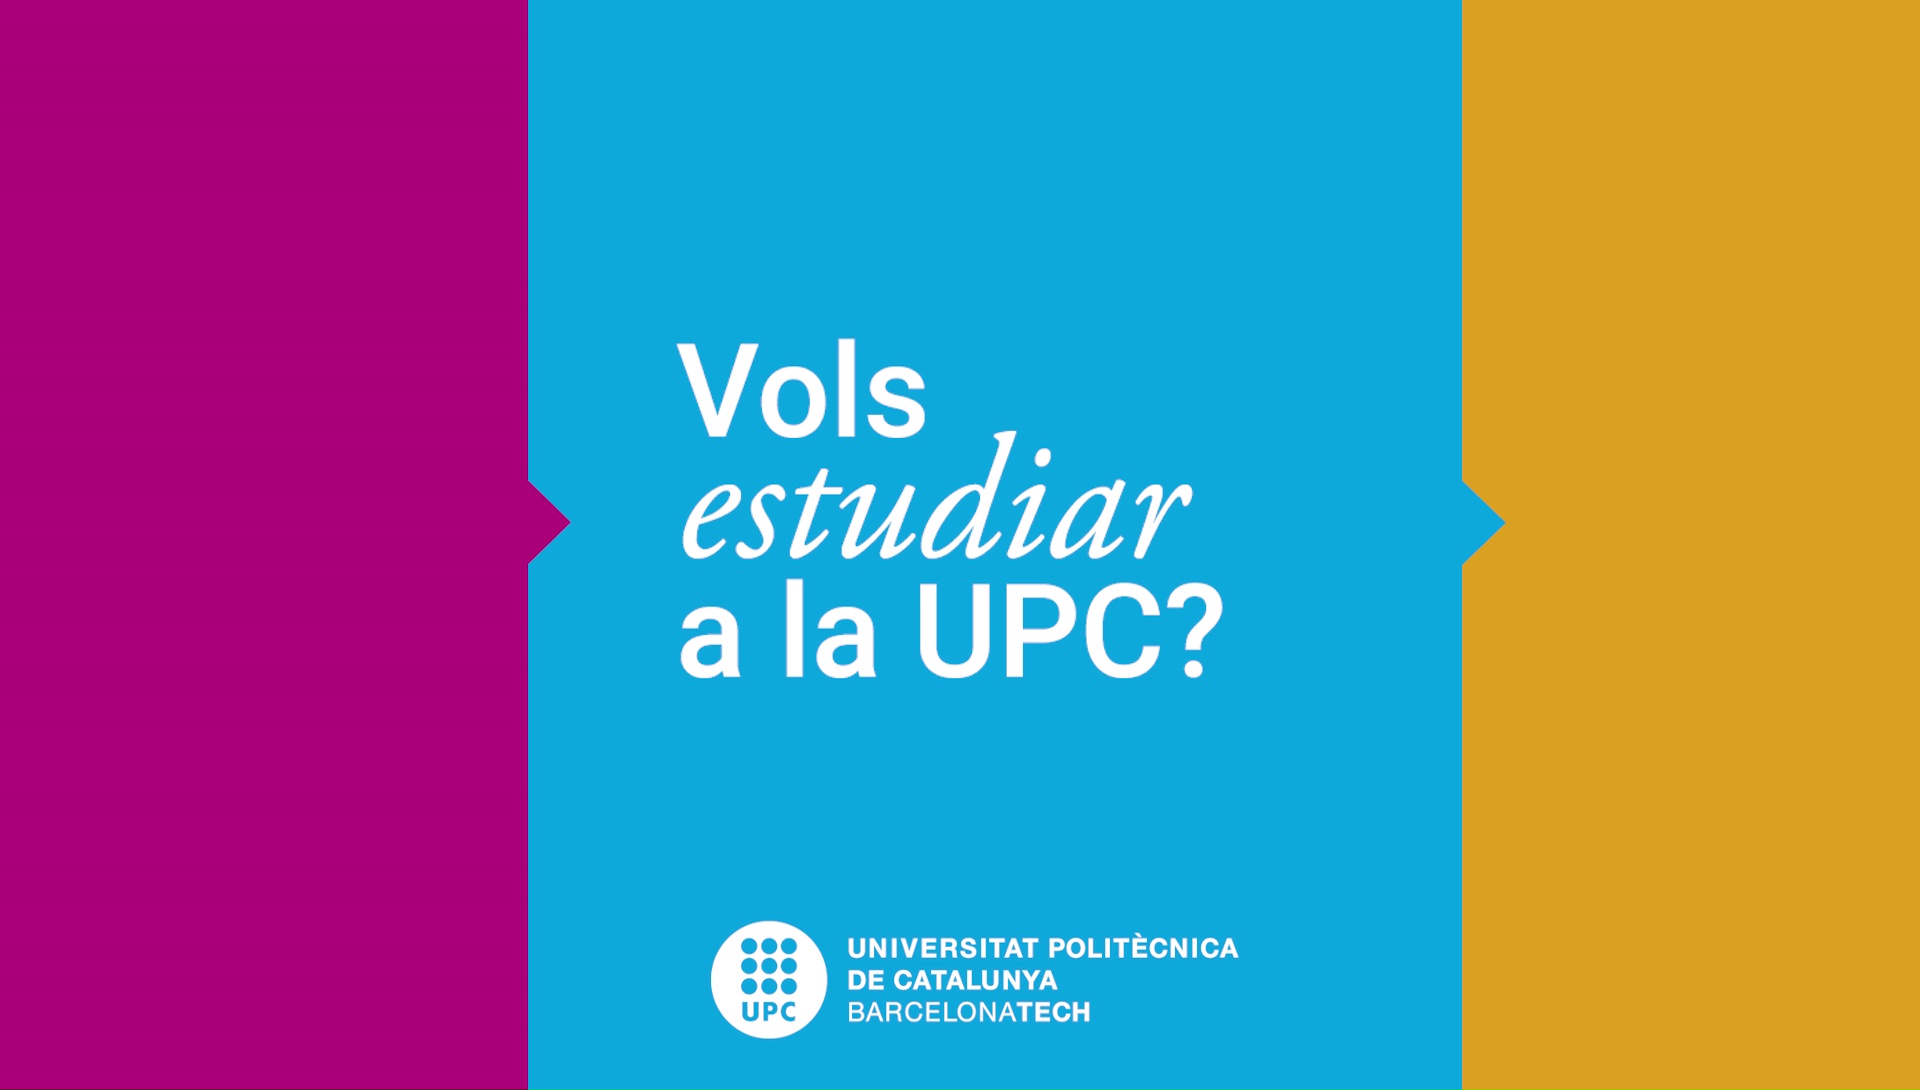 Vols estudiar a la UPC?